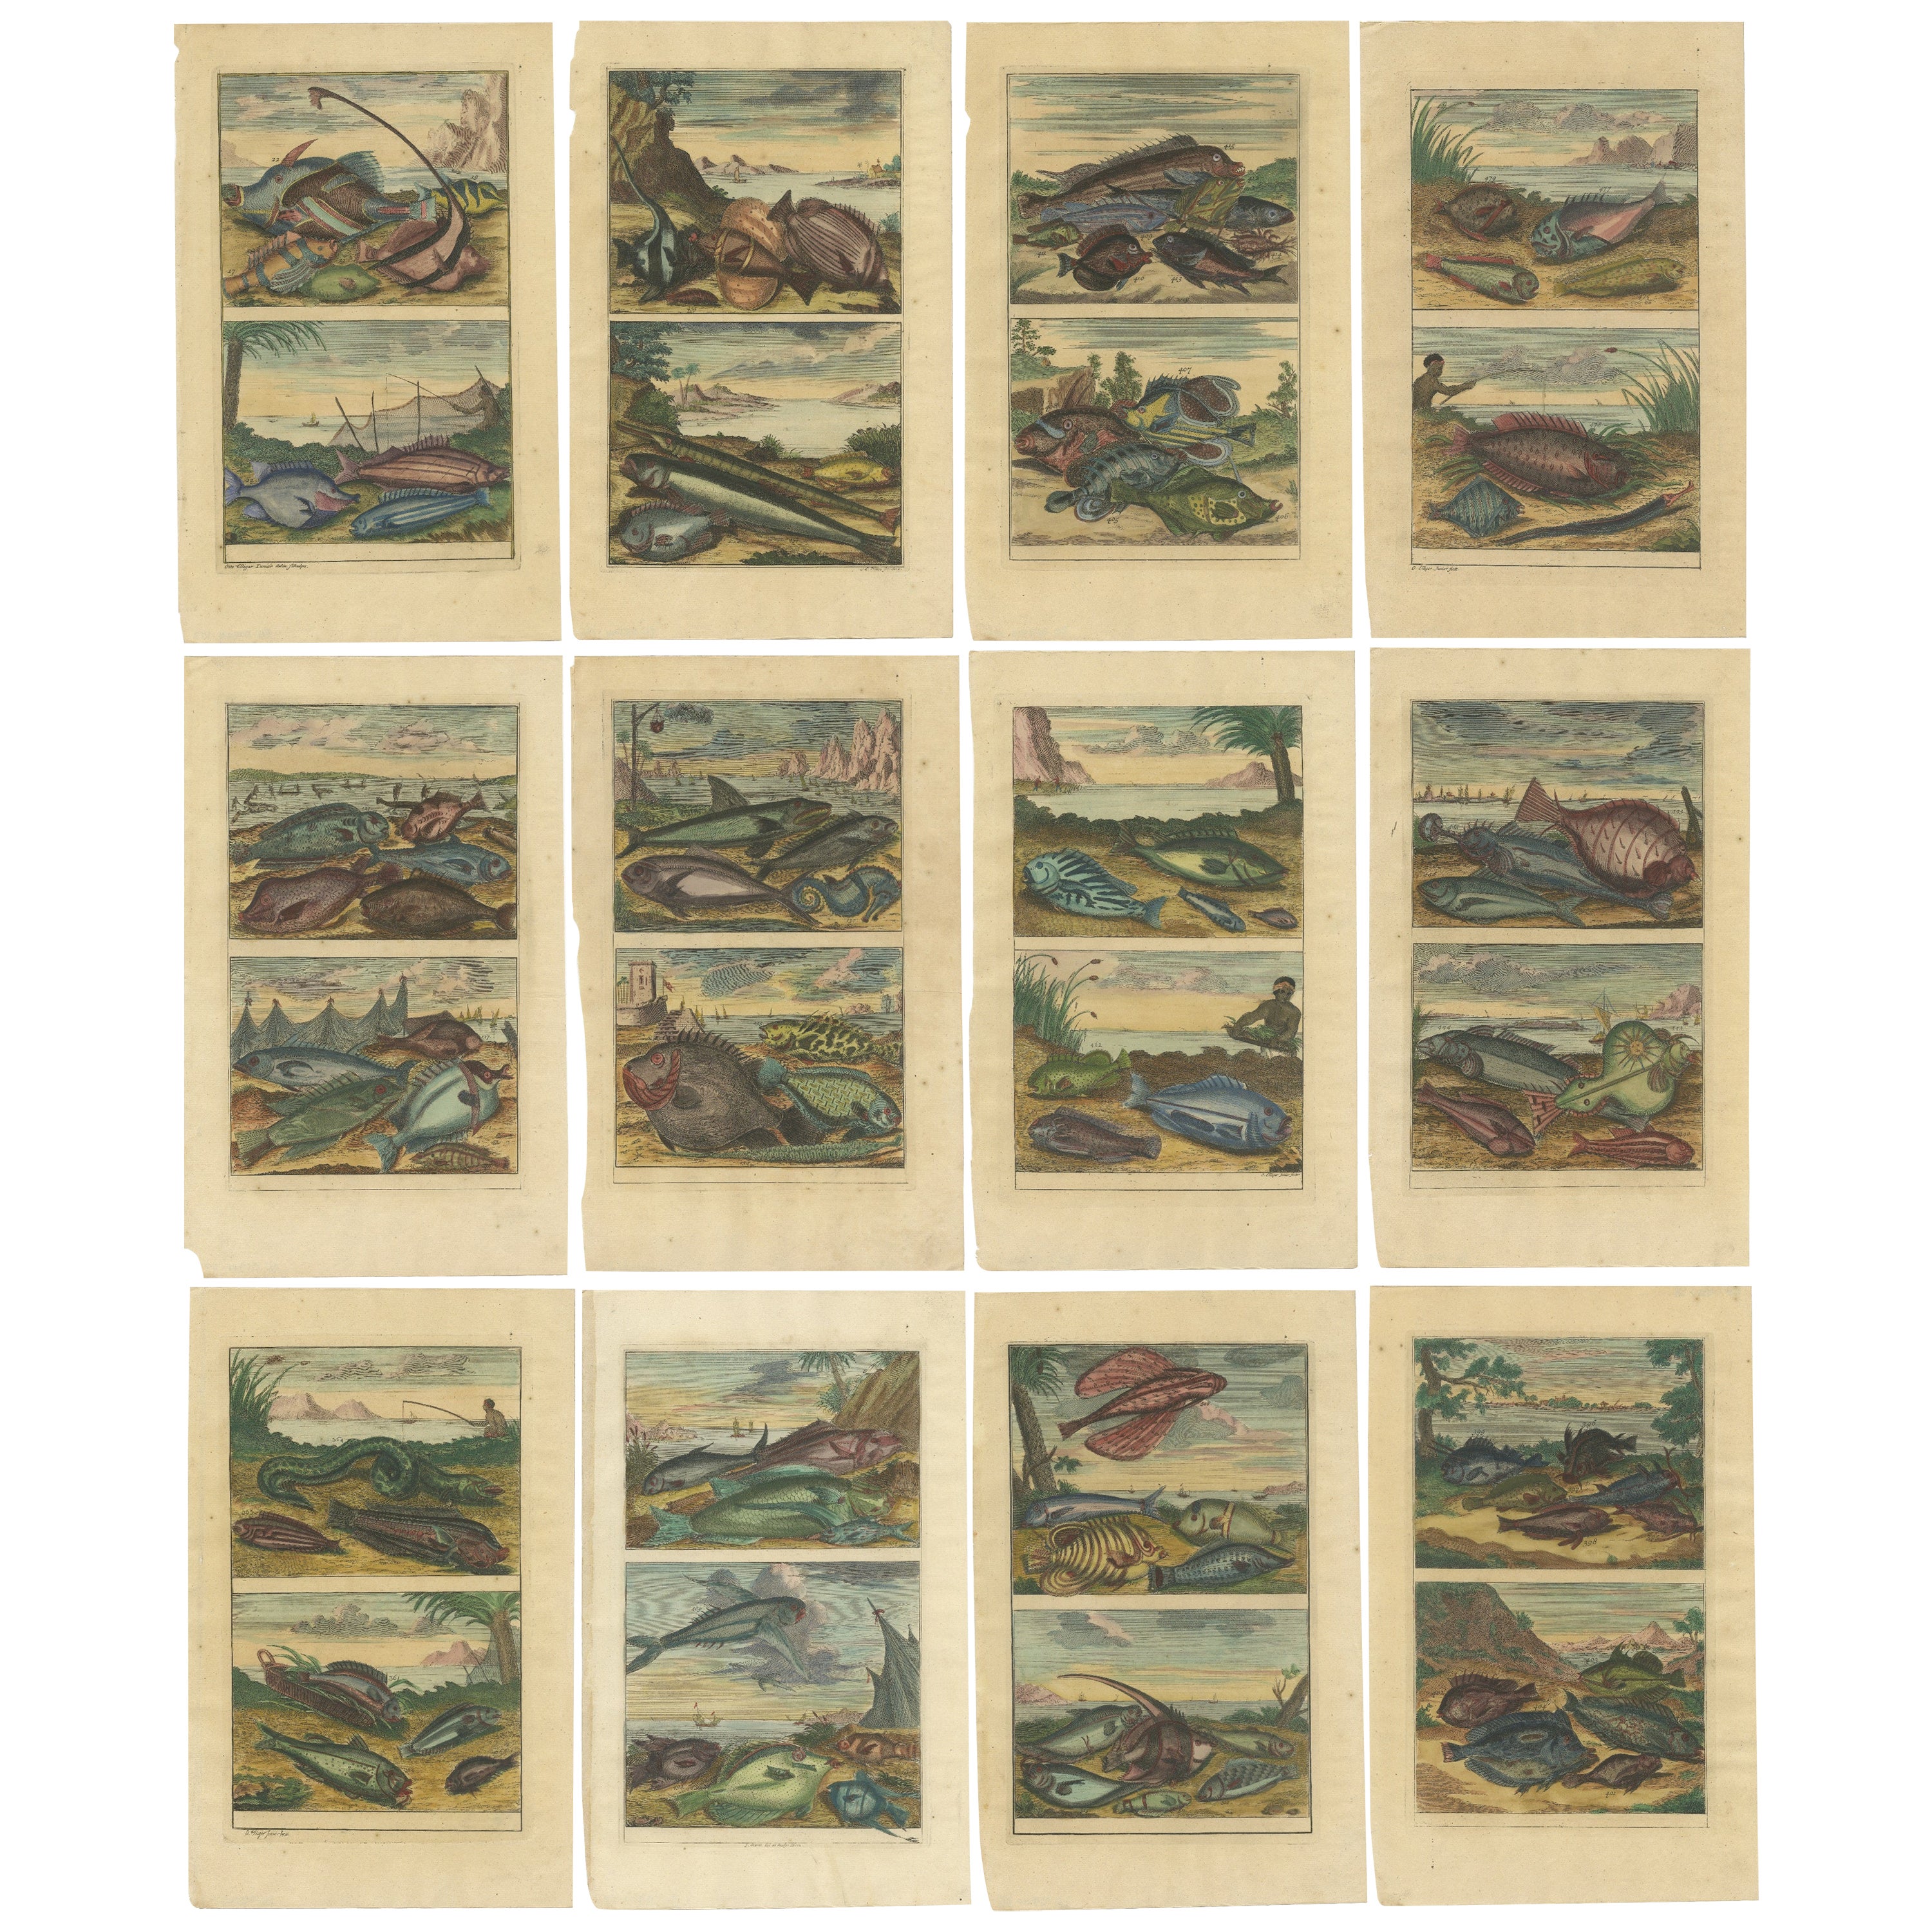 Satz von 12 farbigen antiken Drucken verschiedener Fischarten und anderer Meeresbewohner